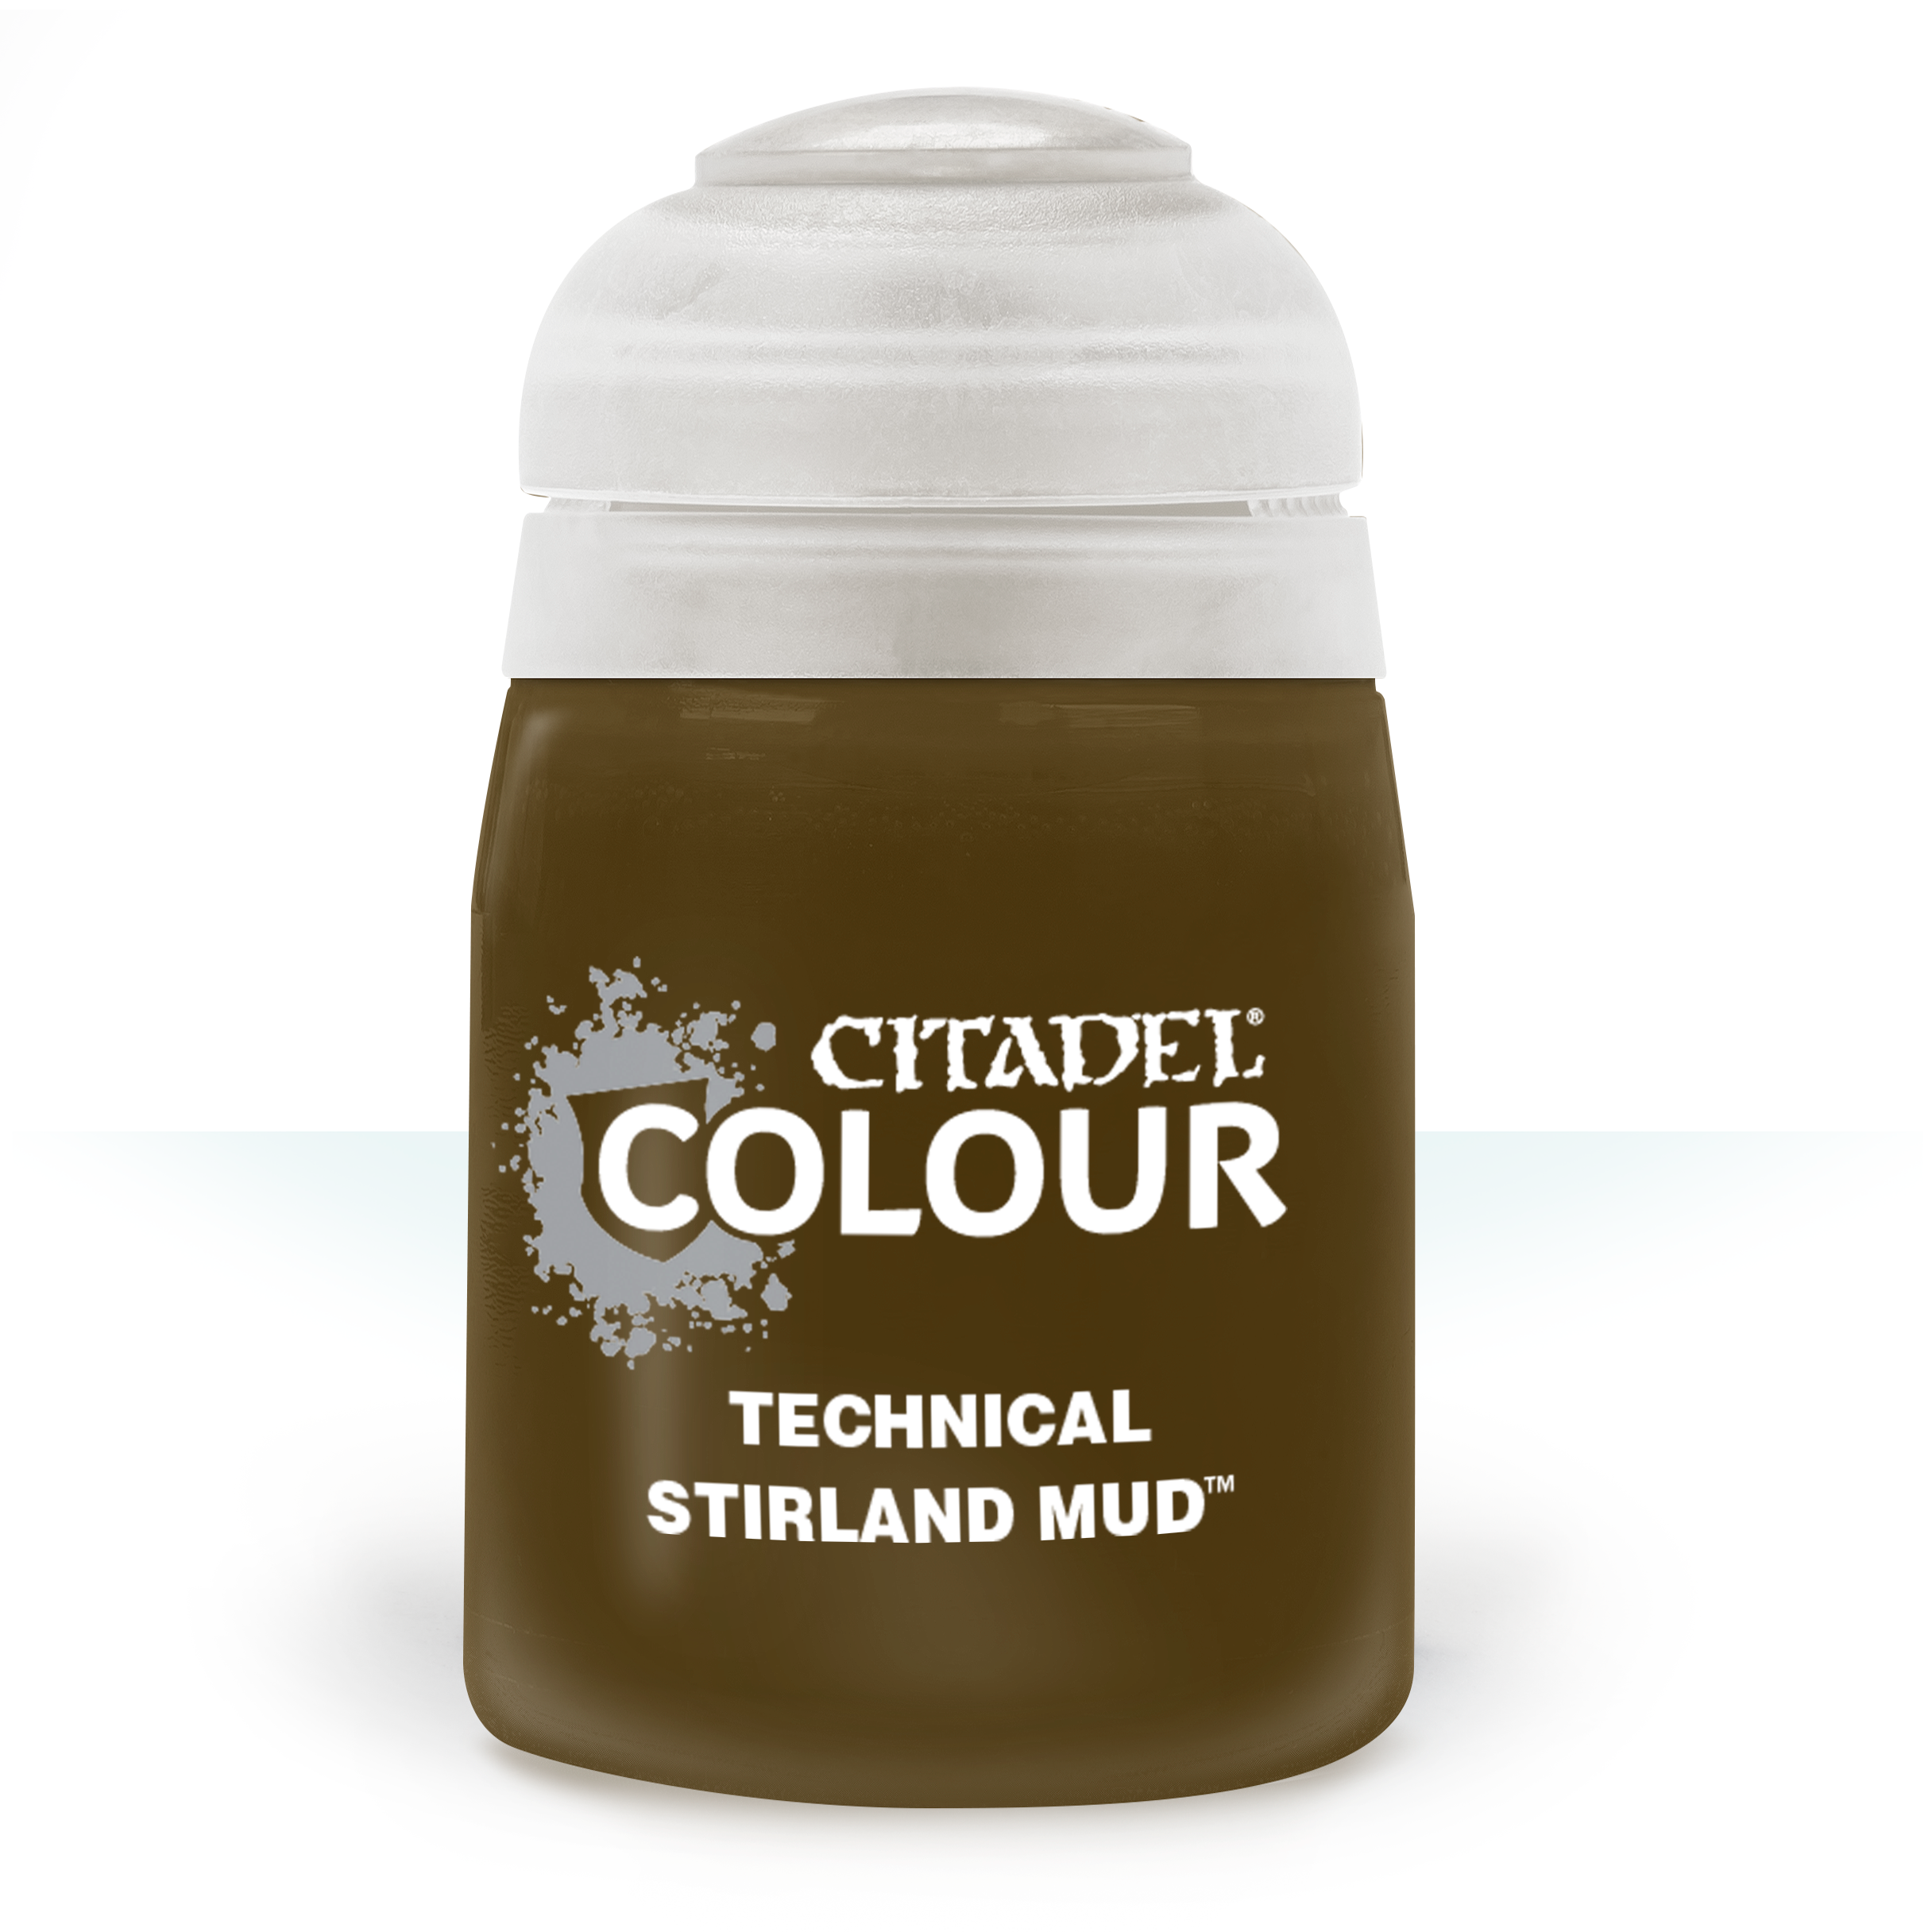 Technical Stirland Mud - The Dice Emporium